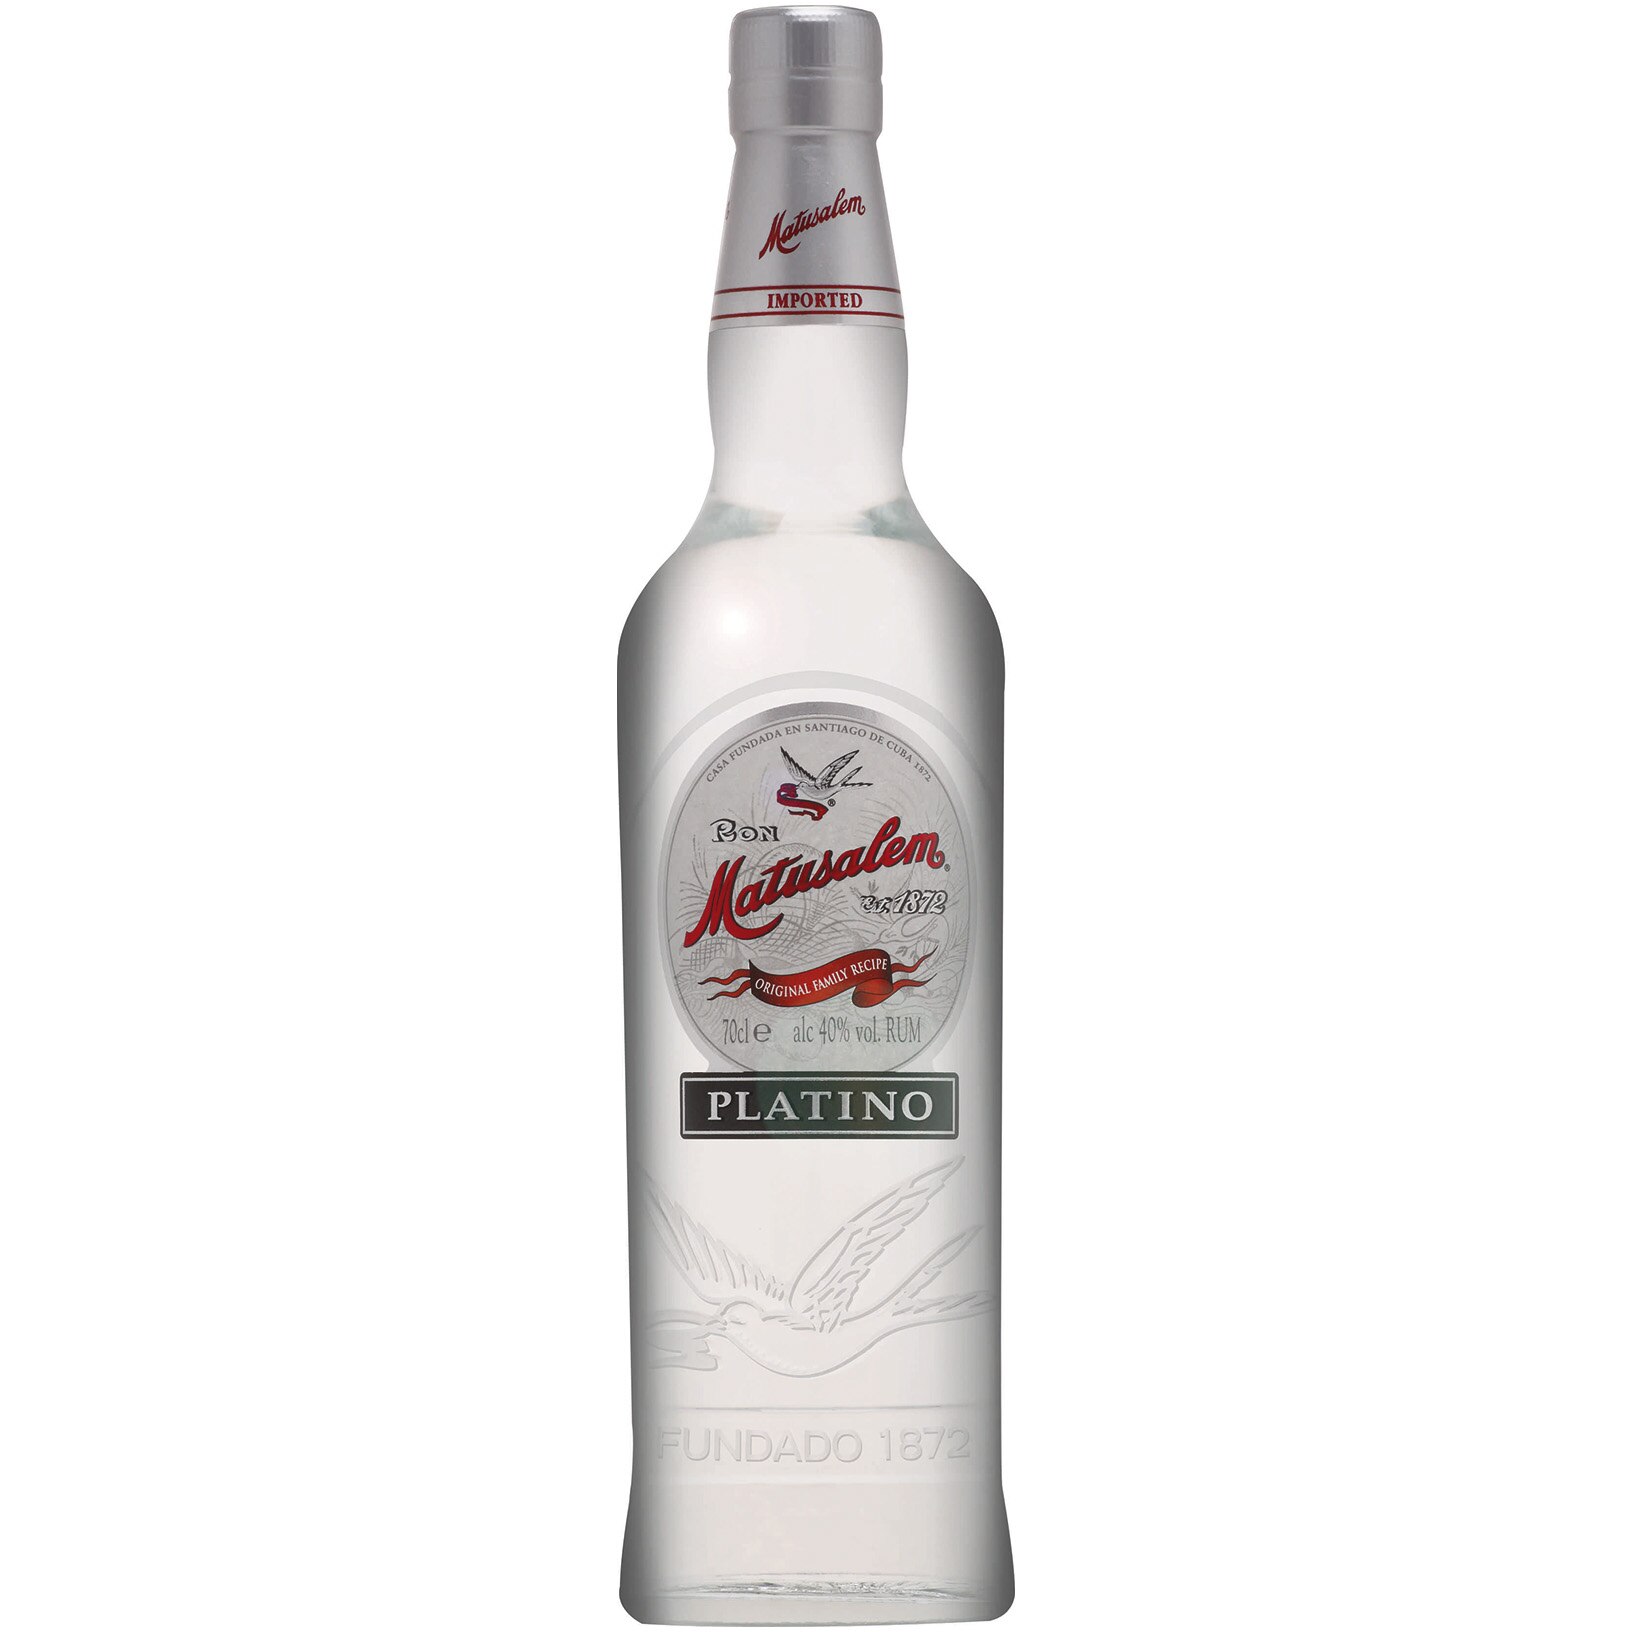 Eminente Rum Reserva 7YO 0.7L (41.3% Vol.)